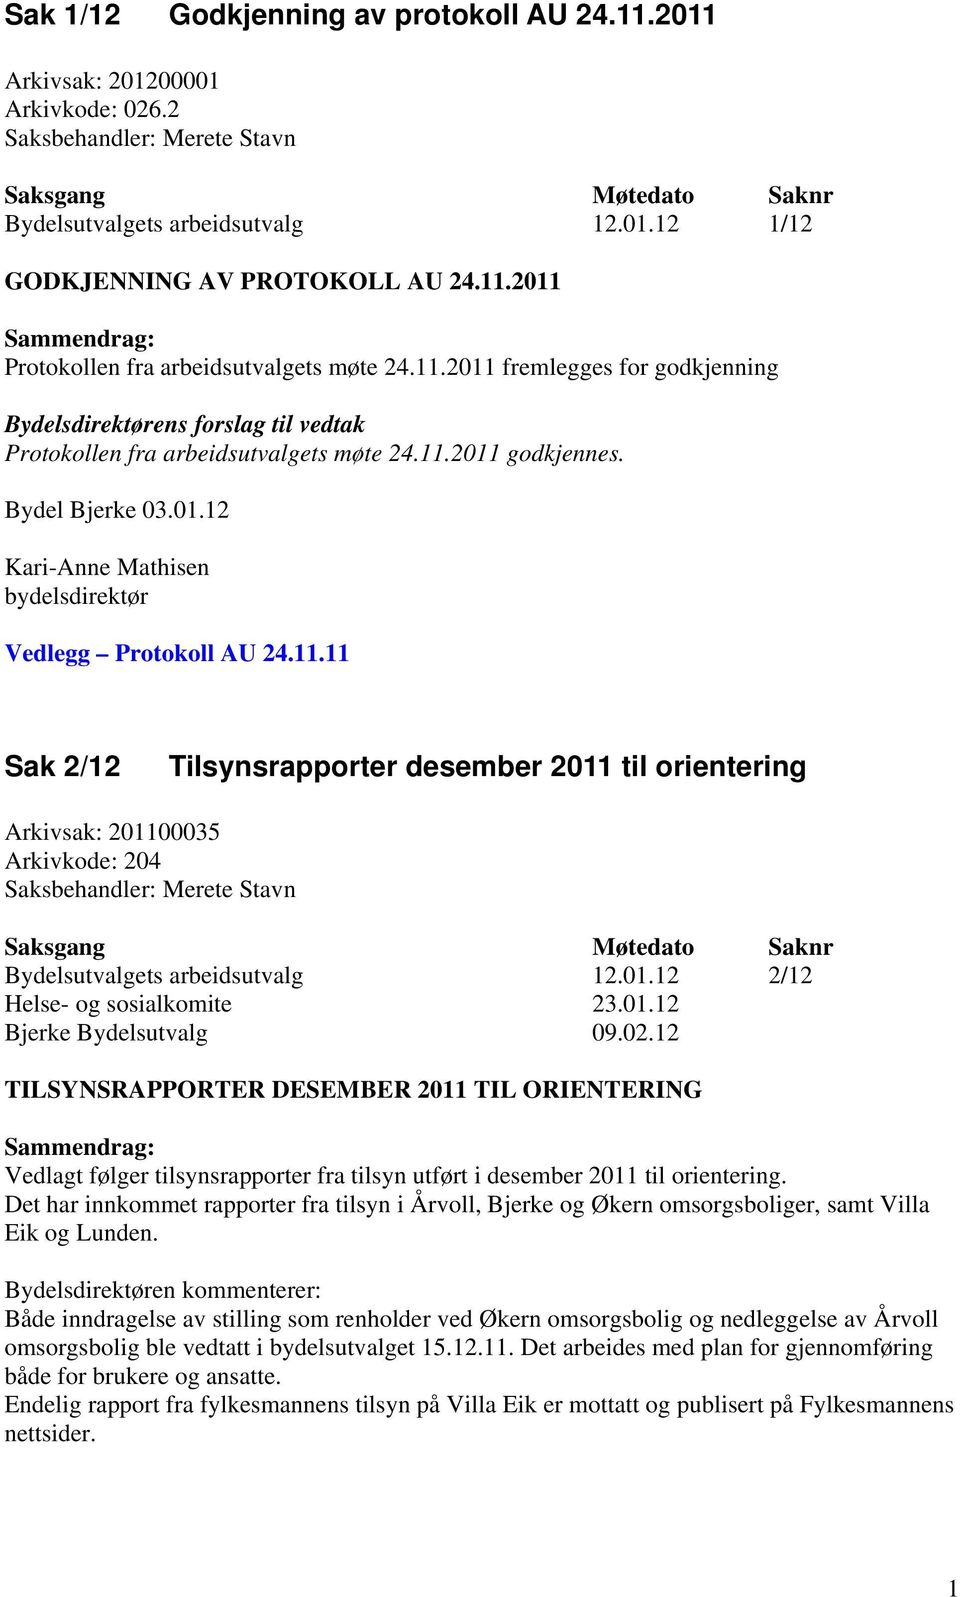 01.12 2/12 Helse- og sosialkomite 23.01.12 TILSYNSRAPPORTER DESEMBER 2011 TIL ORIENTERING Vedlagt følger tilsynsrapporter fra tilsyn utført i desember 2011 til orientering.